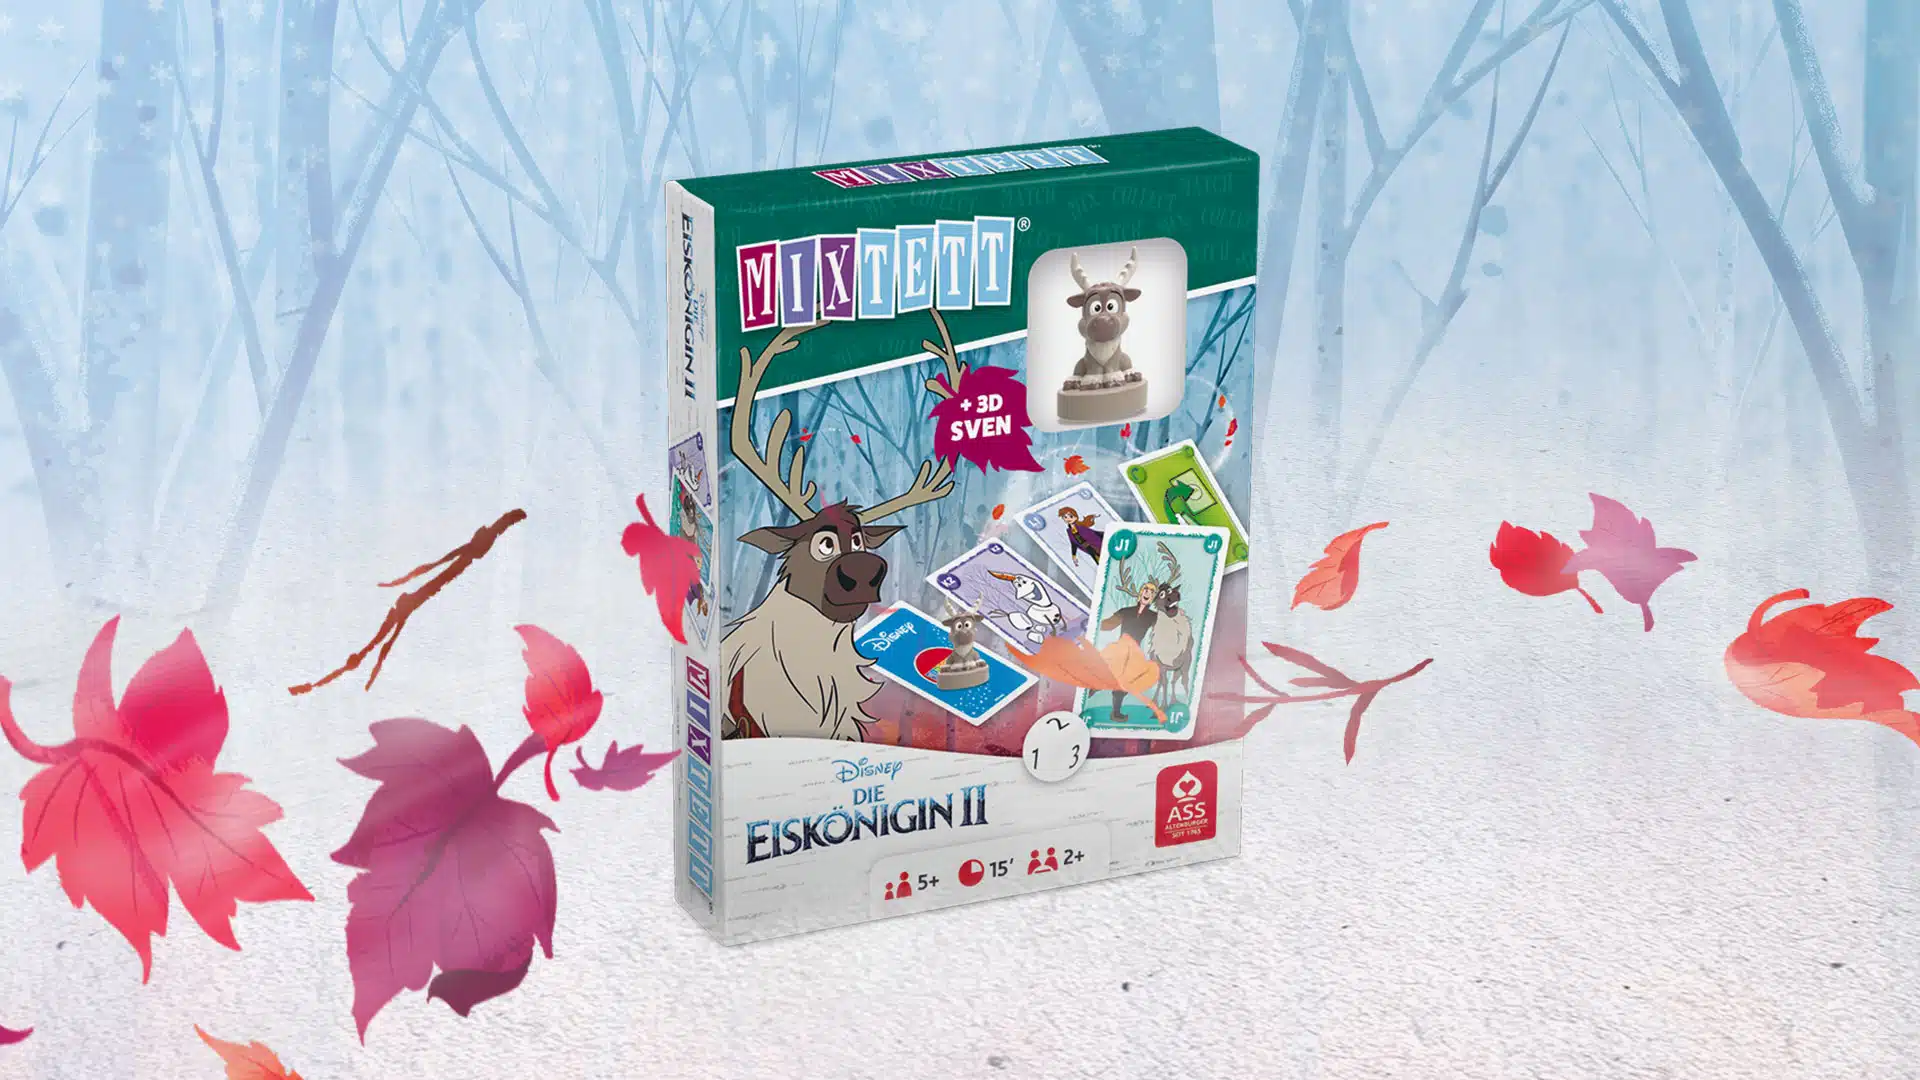 Das Disney Die Eiskoenigin 2 Mixtett Sven Spiel steht auf einem verschneitem Untergrund. Im Hintergrund ist ein verschneiter Wald zu erkennen, um das Spiel herum fliegen ein paar bunte Laubblätter im Wind.